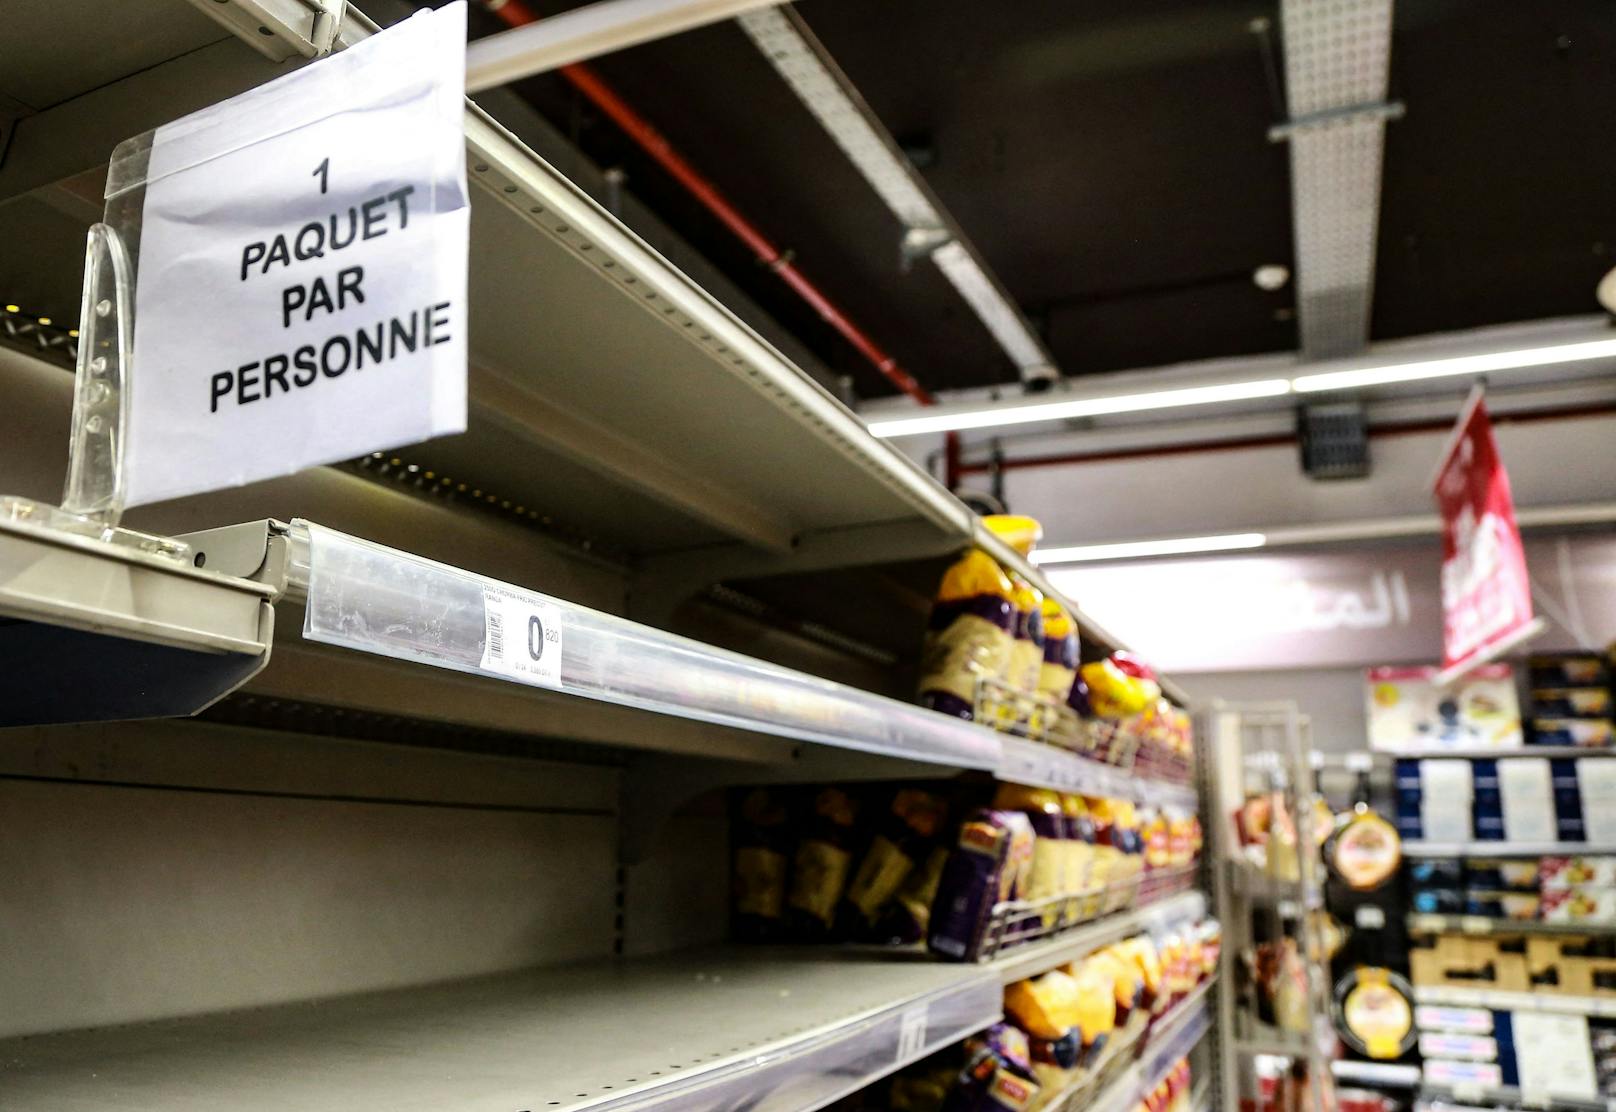 In Tunesien werden derweil Nudeln auf Weizenbasis knapp. "Ein Packerl pro Person" steht auf diesem Schild in einem Supermarkt. 